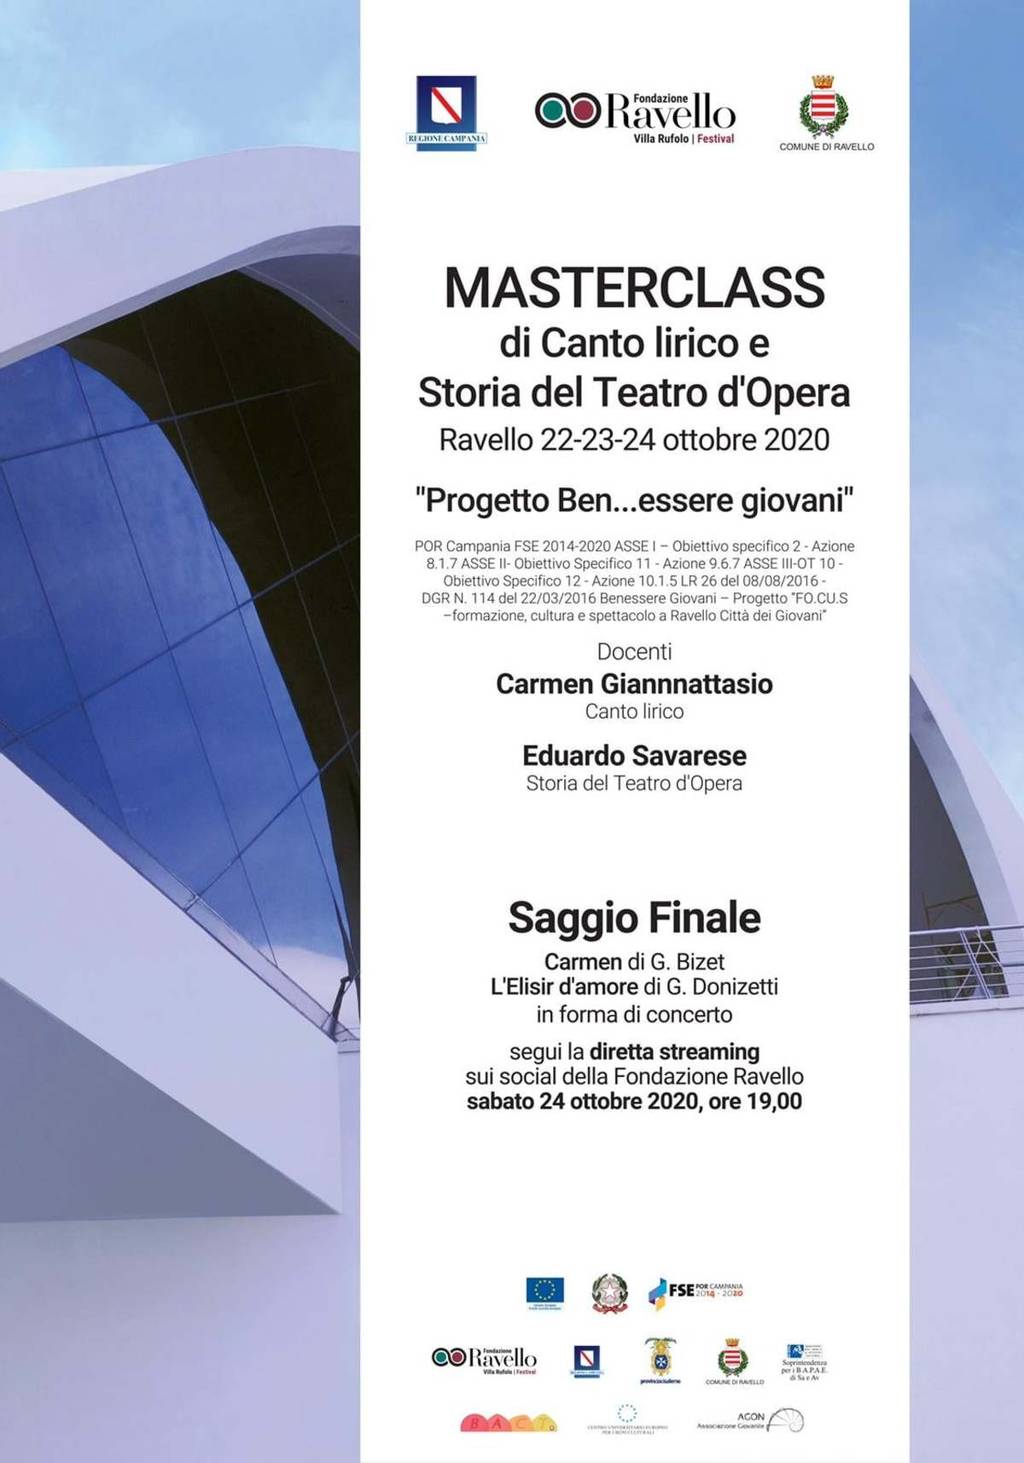 MASTERCLASS di Canto lirico e Storia del Teatro d'Opera